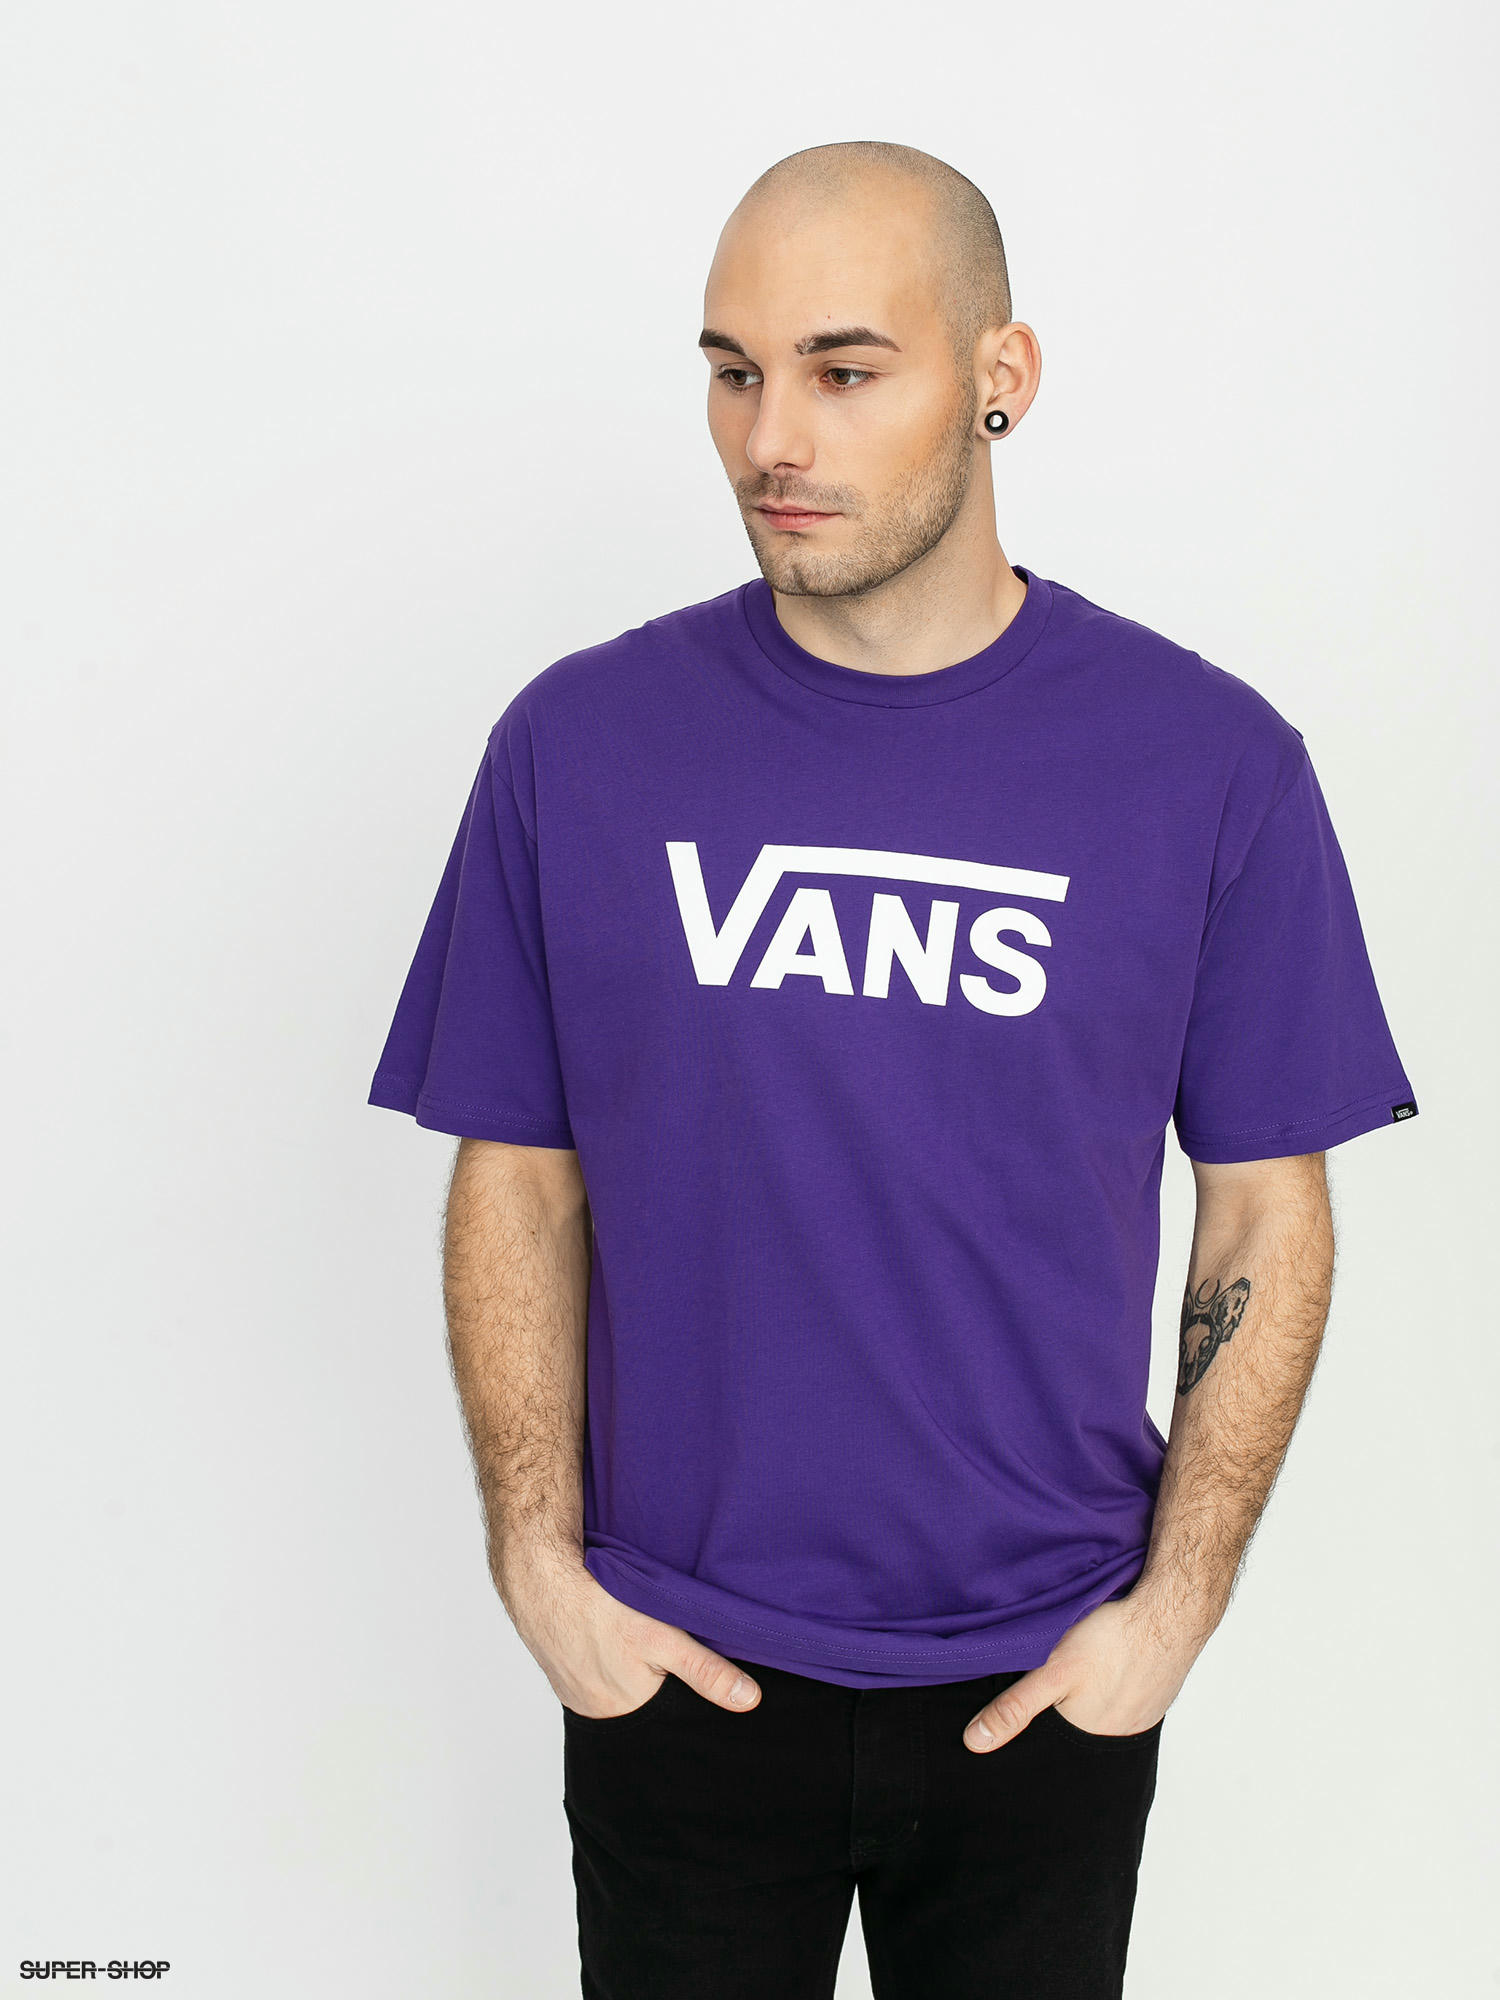 Vans Classic T-shirt (heliotrope/white)